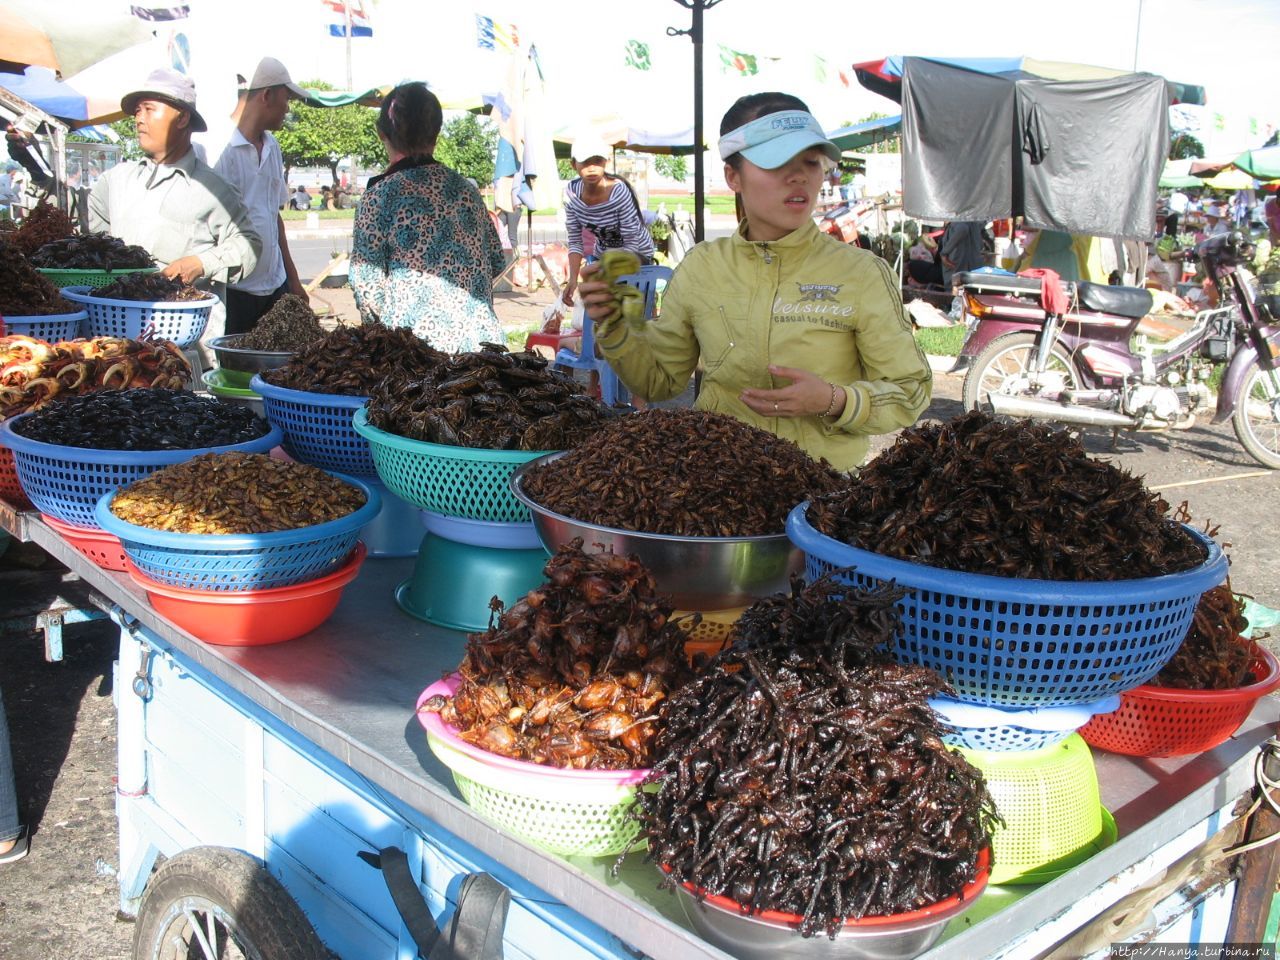 Как поесть насекомых в Камбодже / How to eat insects in Cambodia